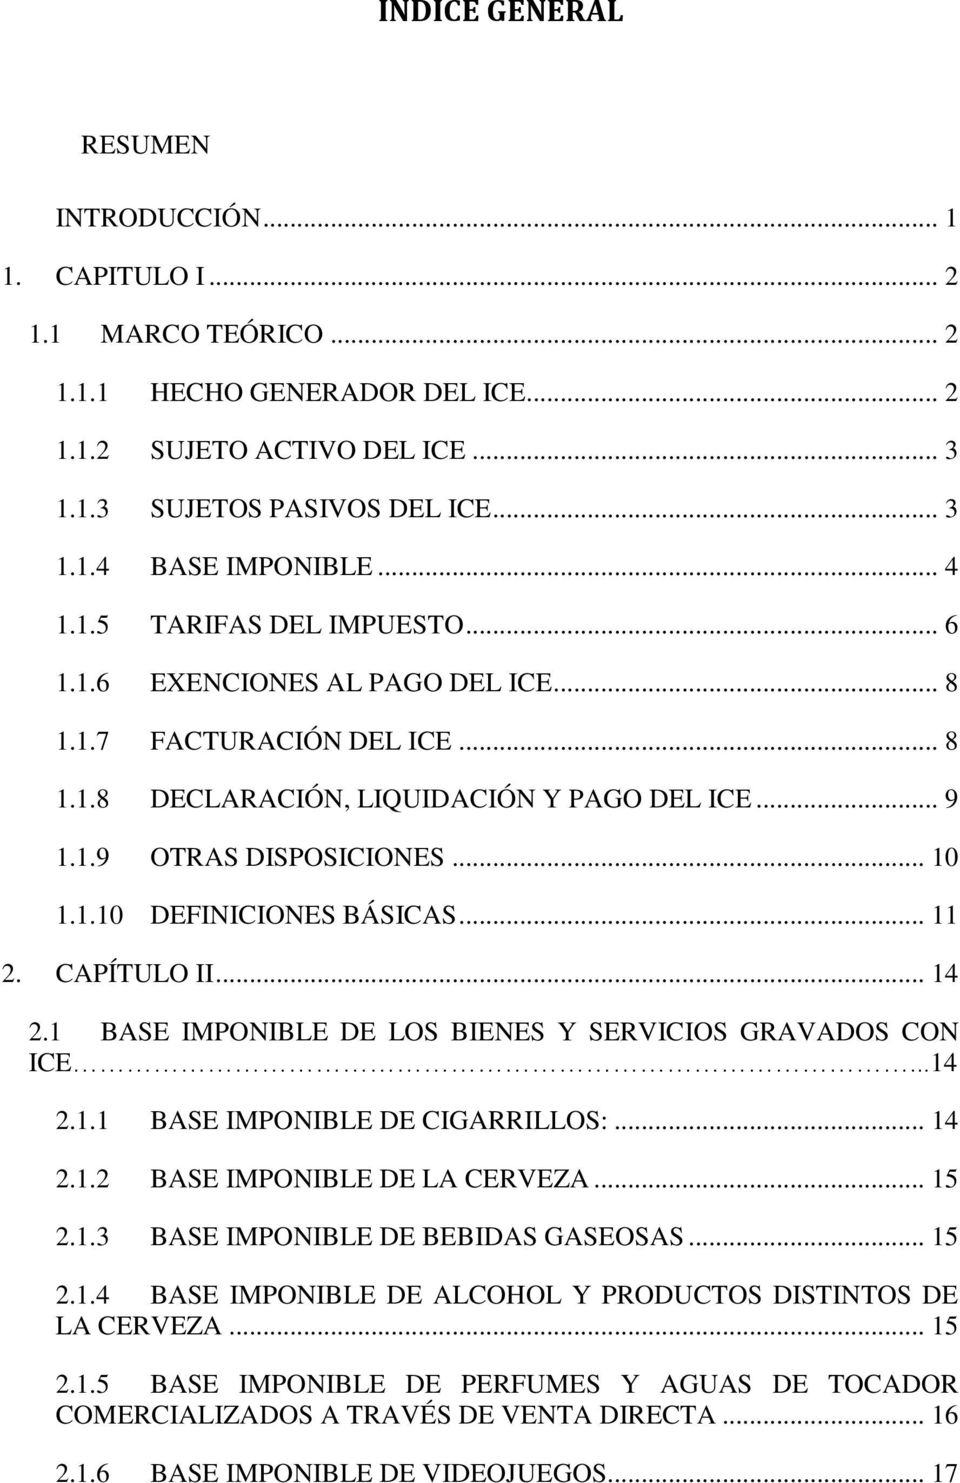 .. 11 2. CAPÍTULO II... 14 2.1 BASE IMPONIBLE DE LOS BIENES Y SERVICIOS GRAVADOS CON ICE...14 2.1.1 BASE IMPONIBLE DE CIGARRILLOS:... 14 2.1.2 BASE IMPONIBLE DE LA CERVEZA... 15 2.1.3 BASE IMPONIBLE DE BEBIDAS GASEOSAS.